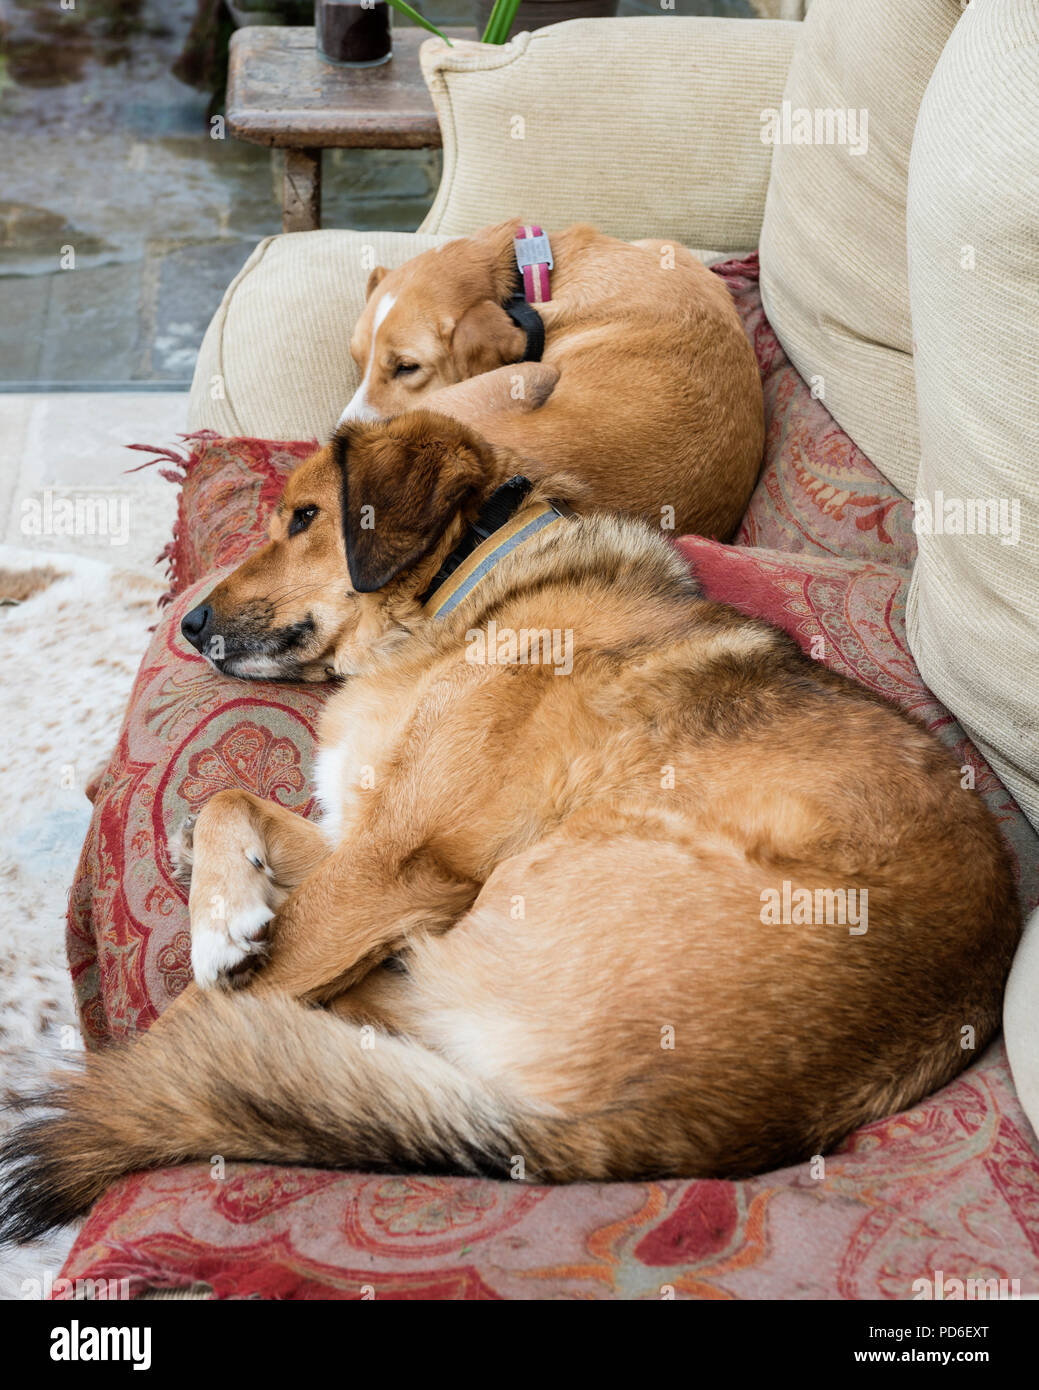 Zwei Hunde eingerollt auf Bauernhaus Sofa Stockfotografie - Alamy